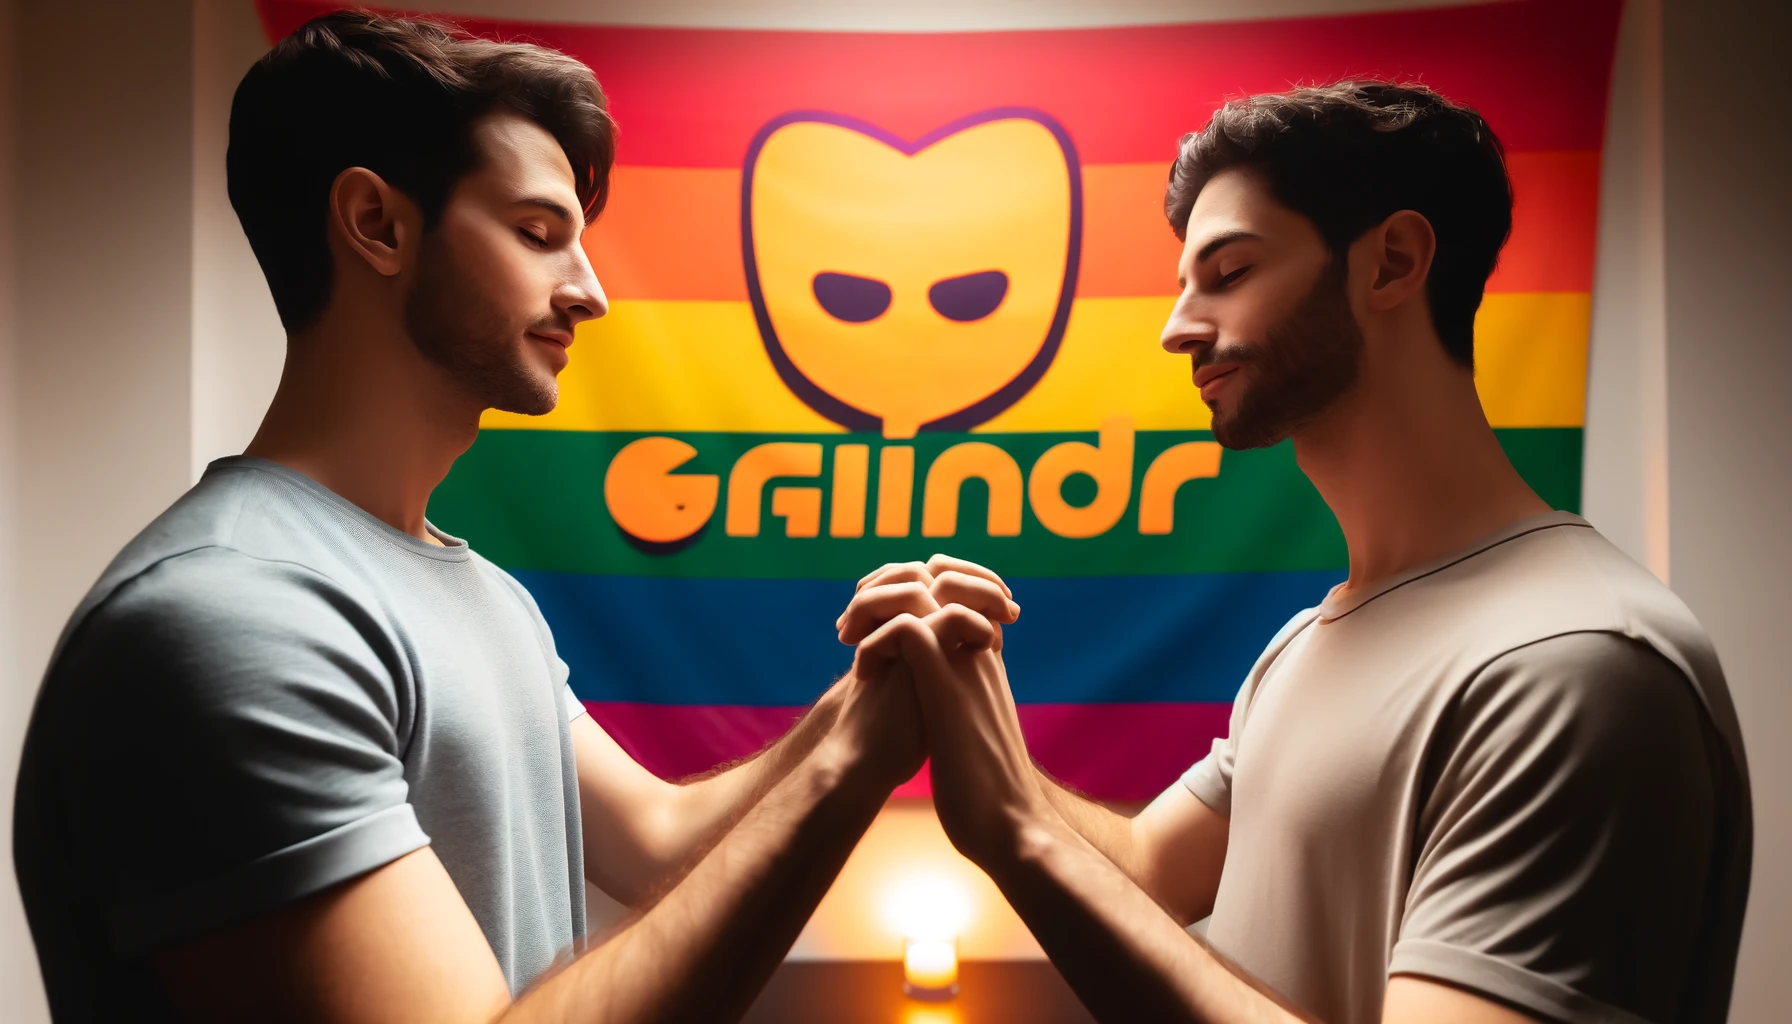 זוג הומואים שהכירו דרך אפליקציית גריינדר